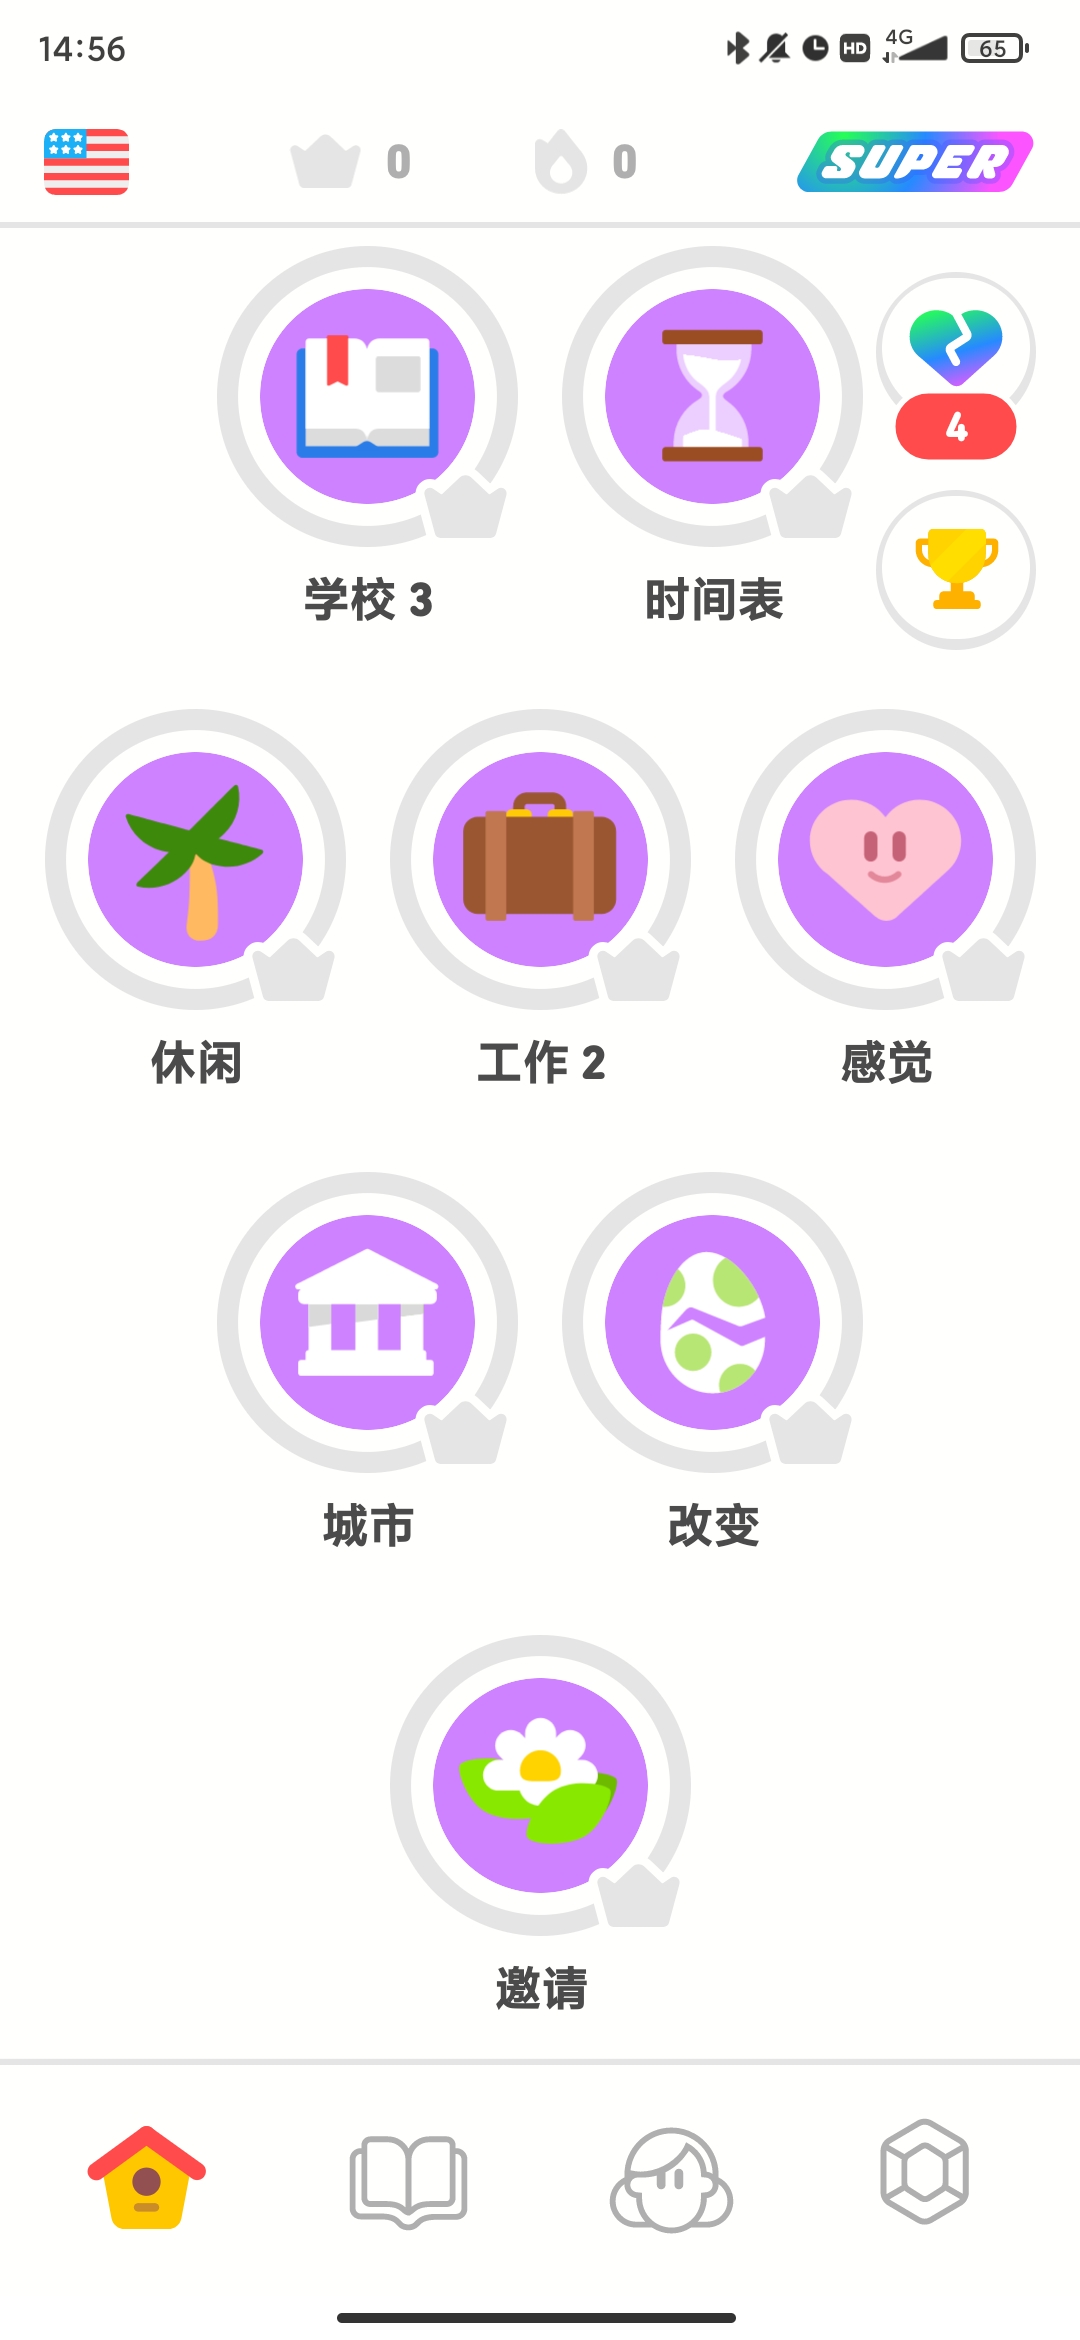 多邻国Duolingo英语日语法语解锁付费版